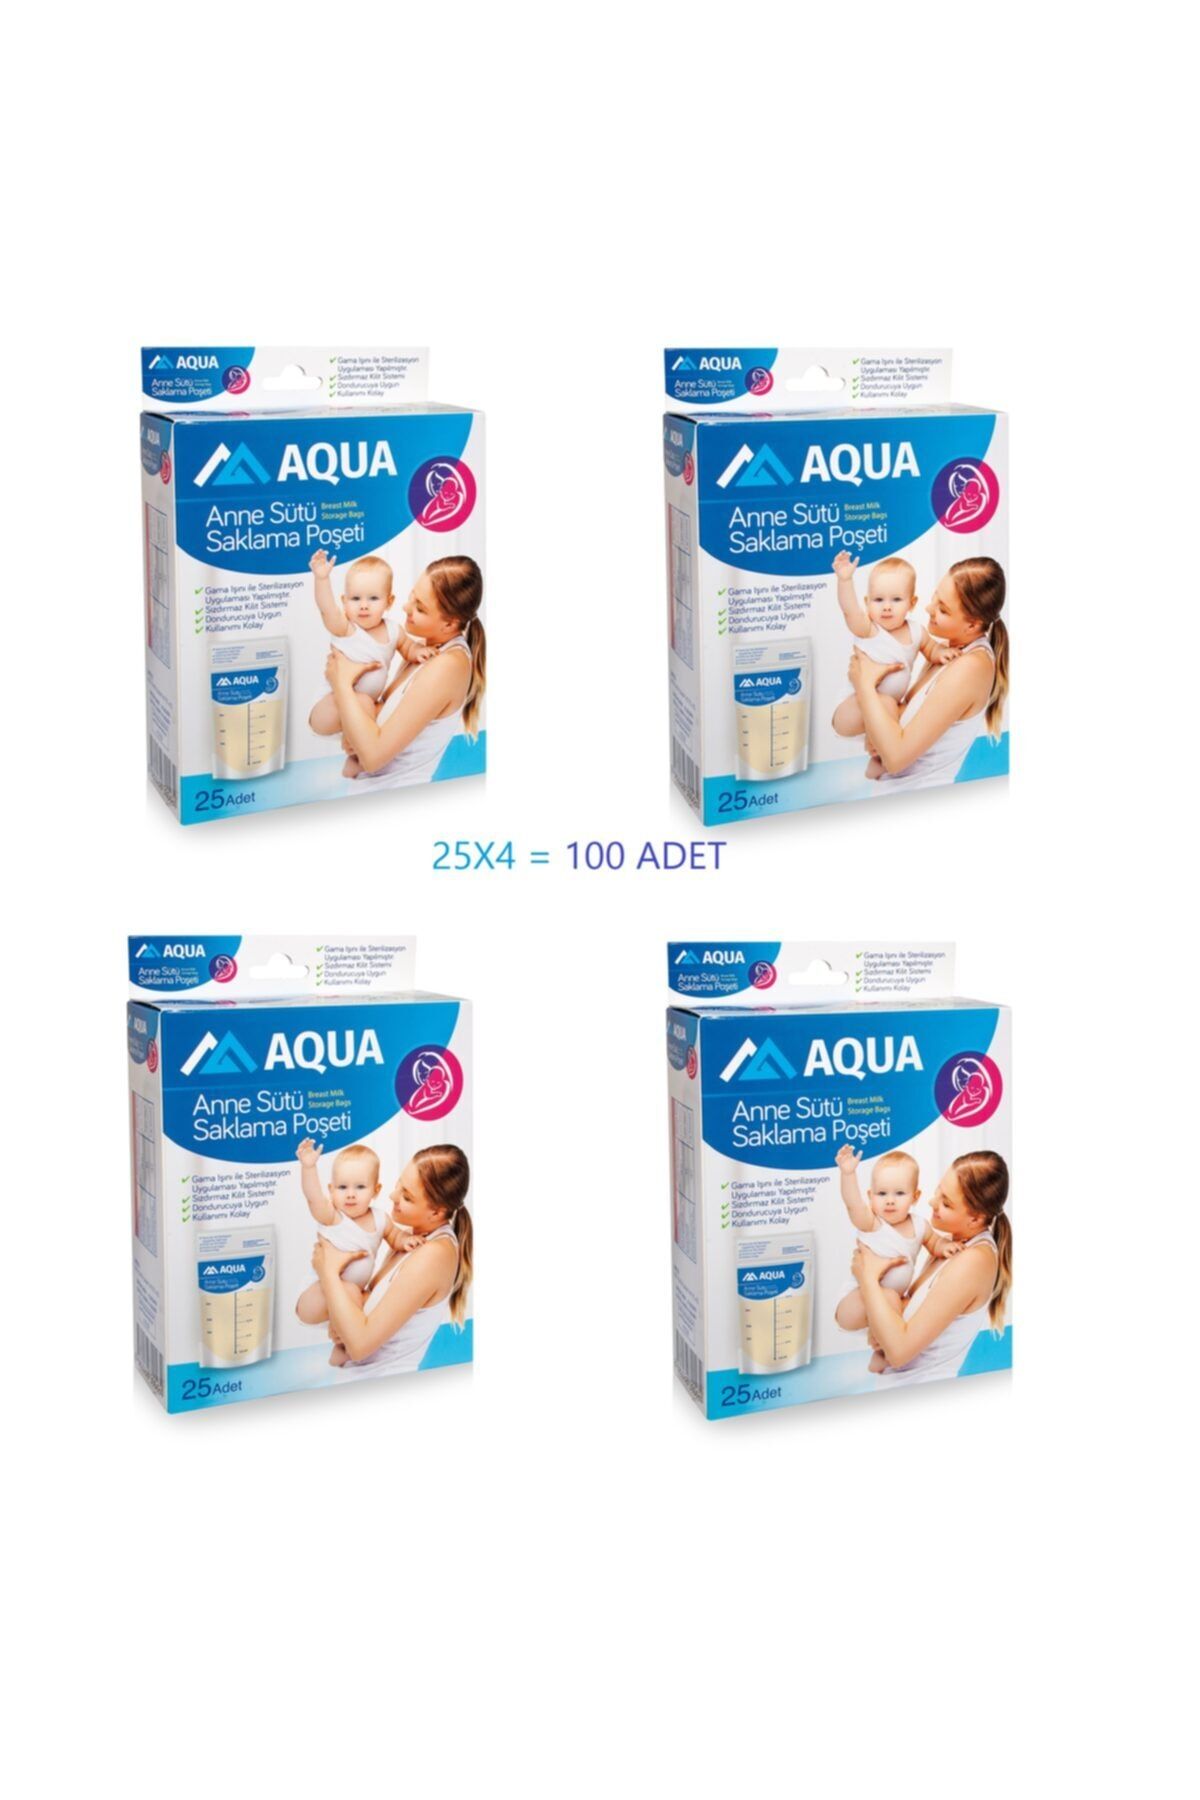 Aqua Süt Saklama Poşeti 25x4 100 Adet